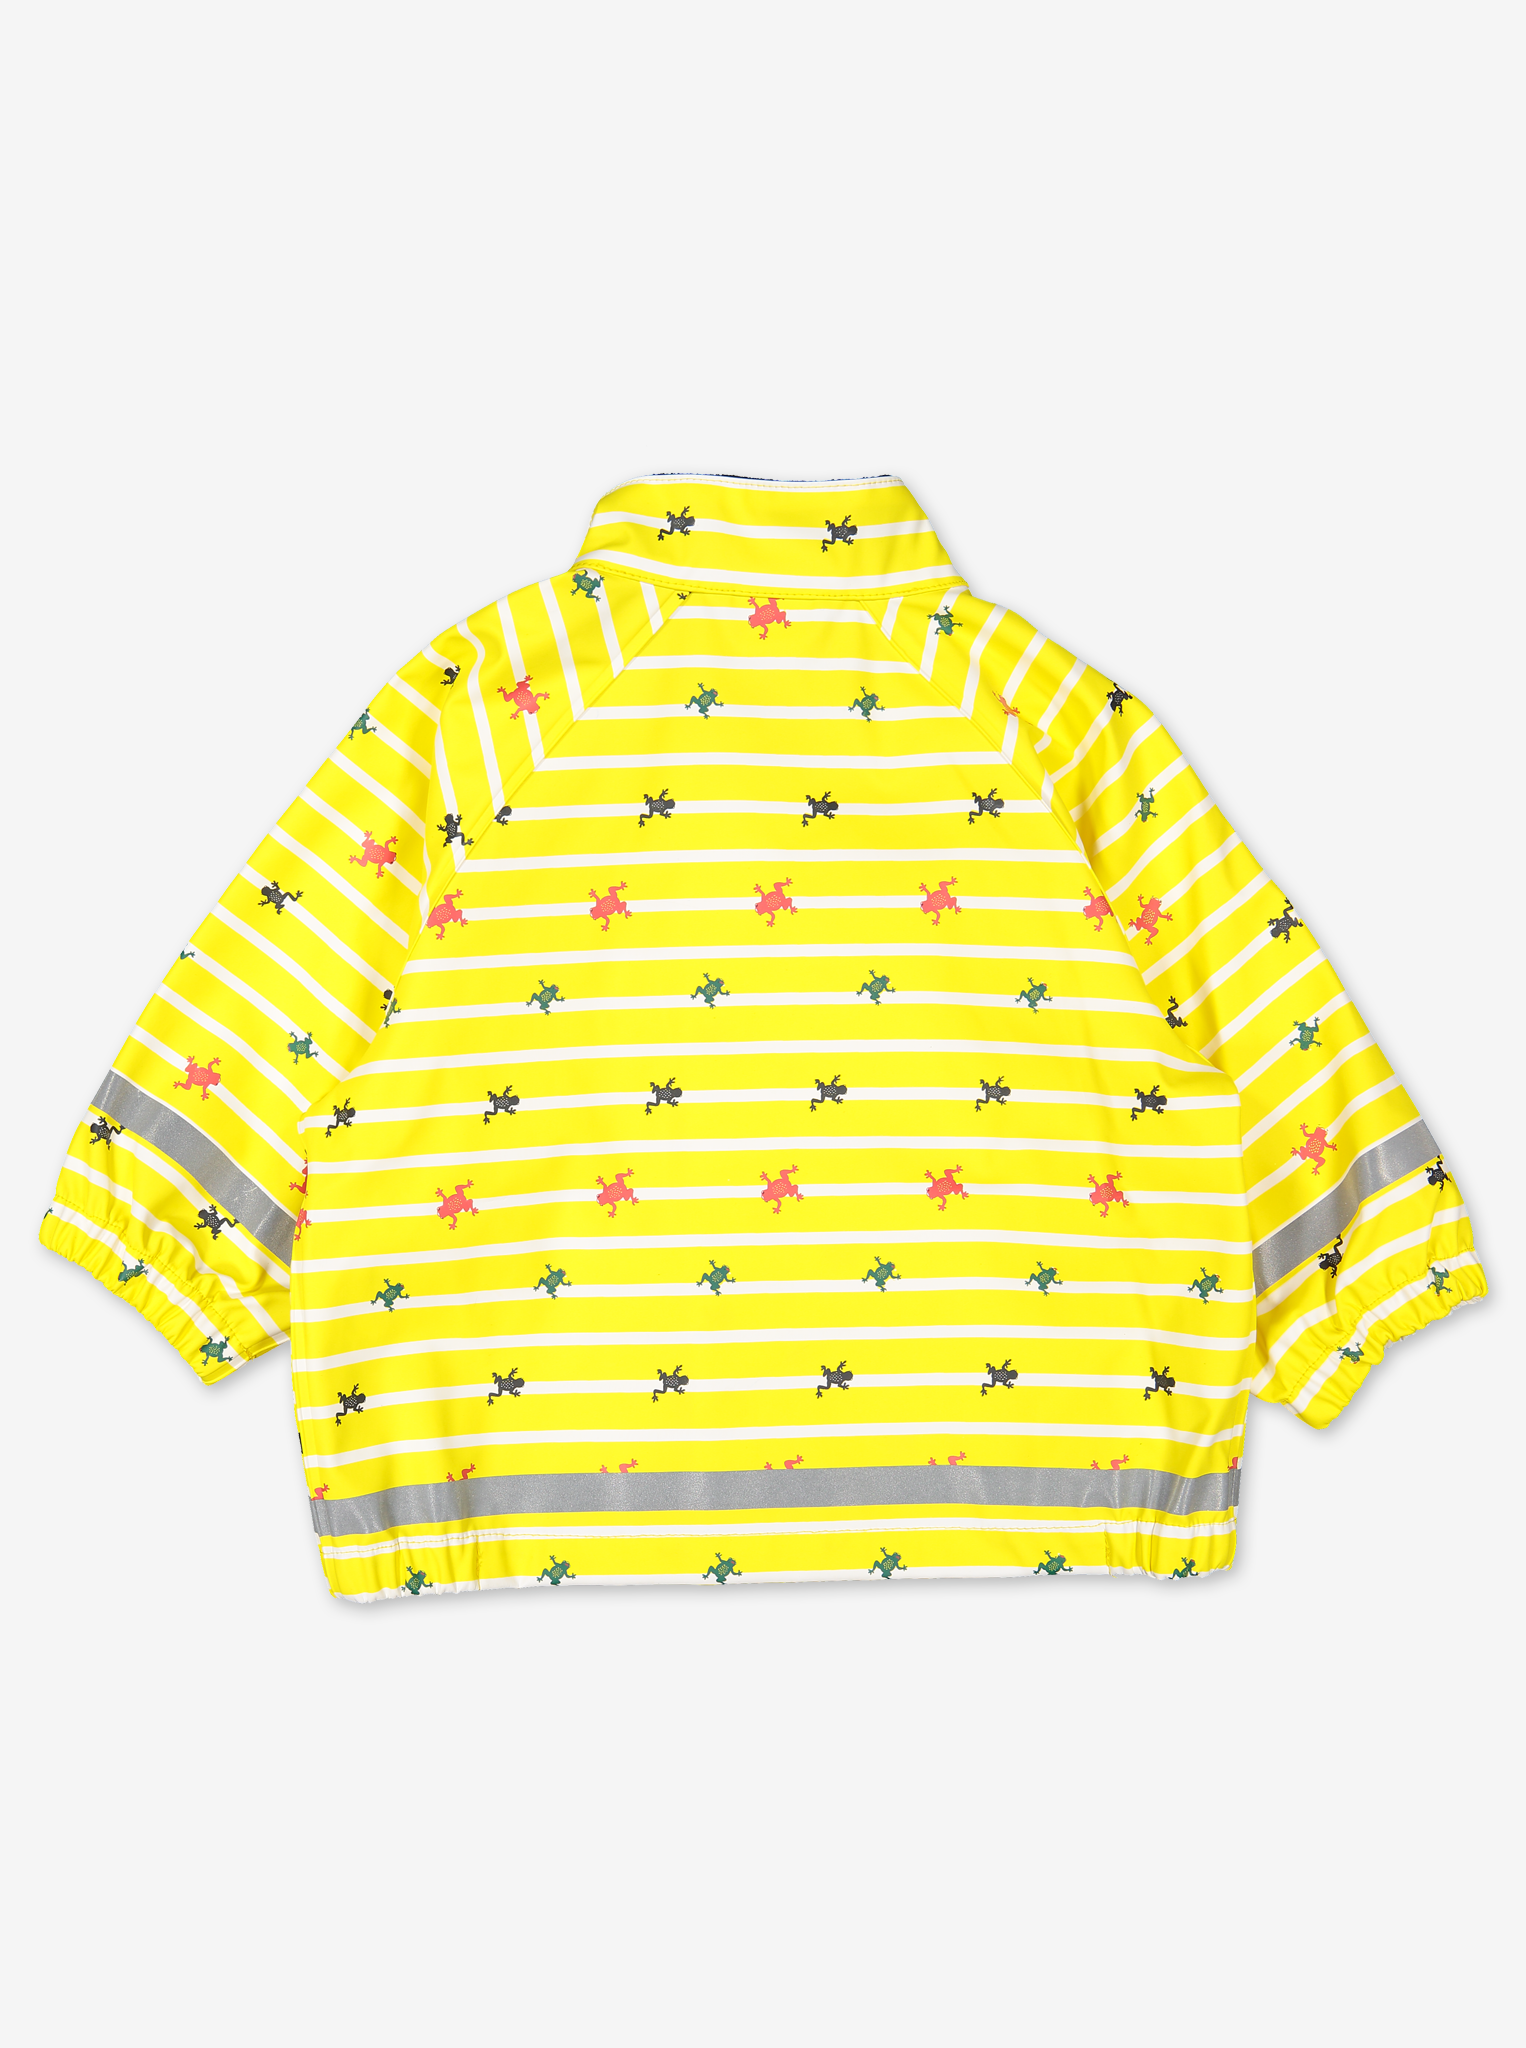 Waterproof Baby Raincoat---Yellow---Unisex---6-12m